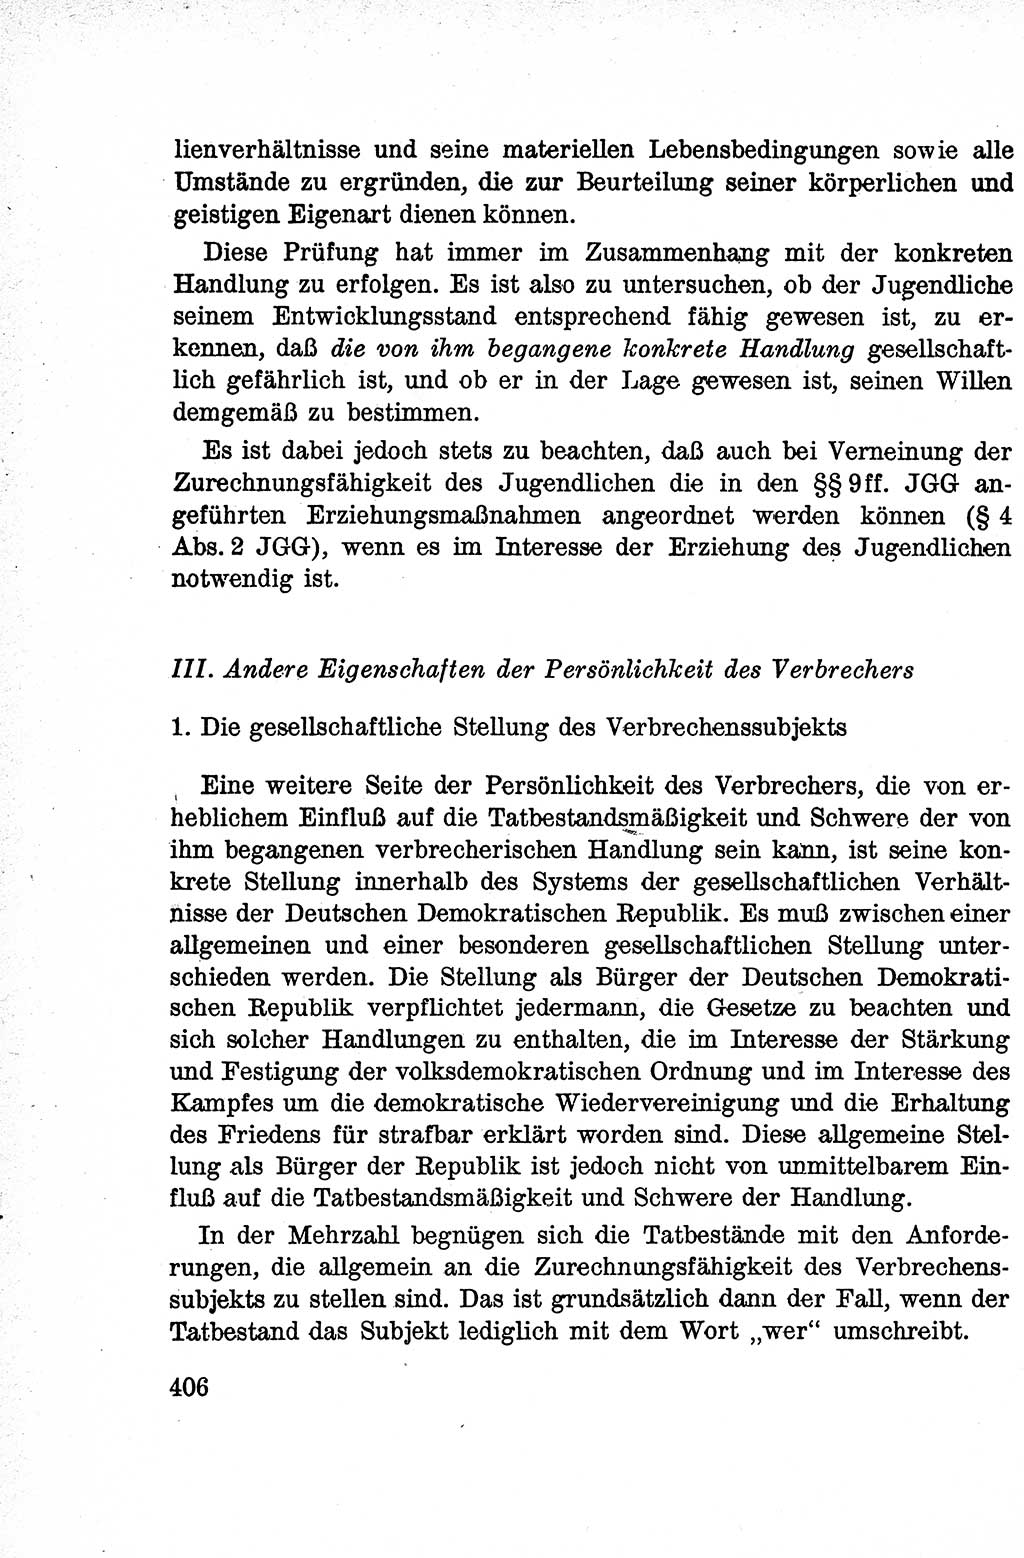 Lehrbuch des Strafrechts der Deutschen Demokratischen Republik (DDR), Allgemeiner Teil 1959, Seite 406 (Lb. Strafr. DDR AT 1959, S. 406)